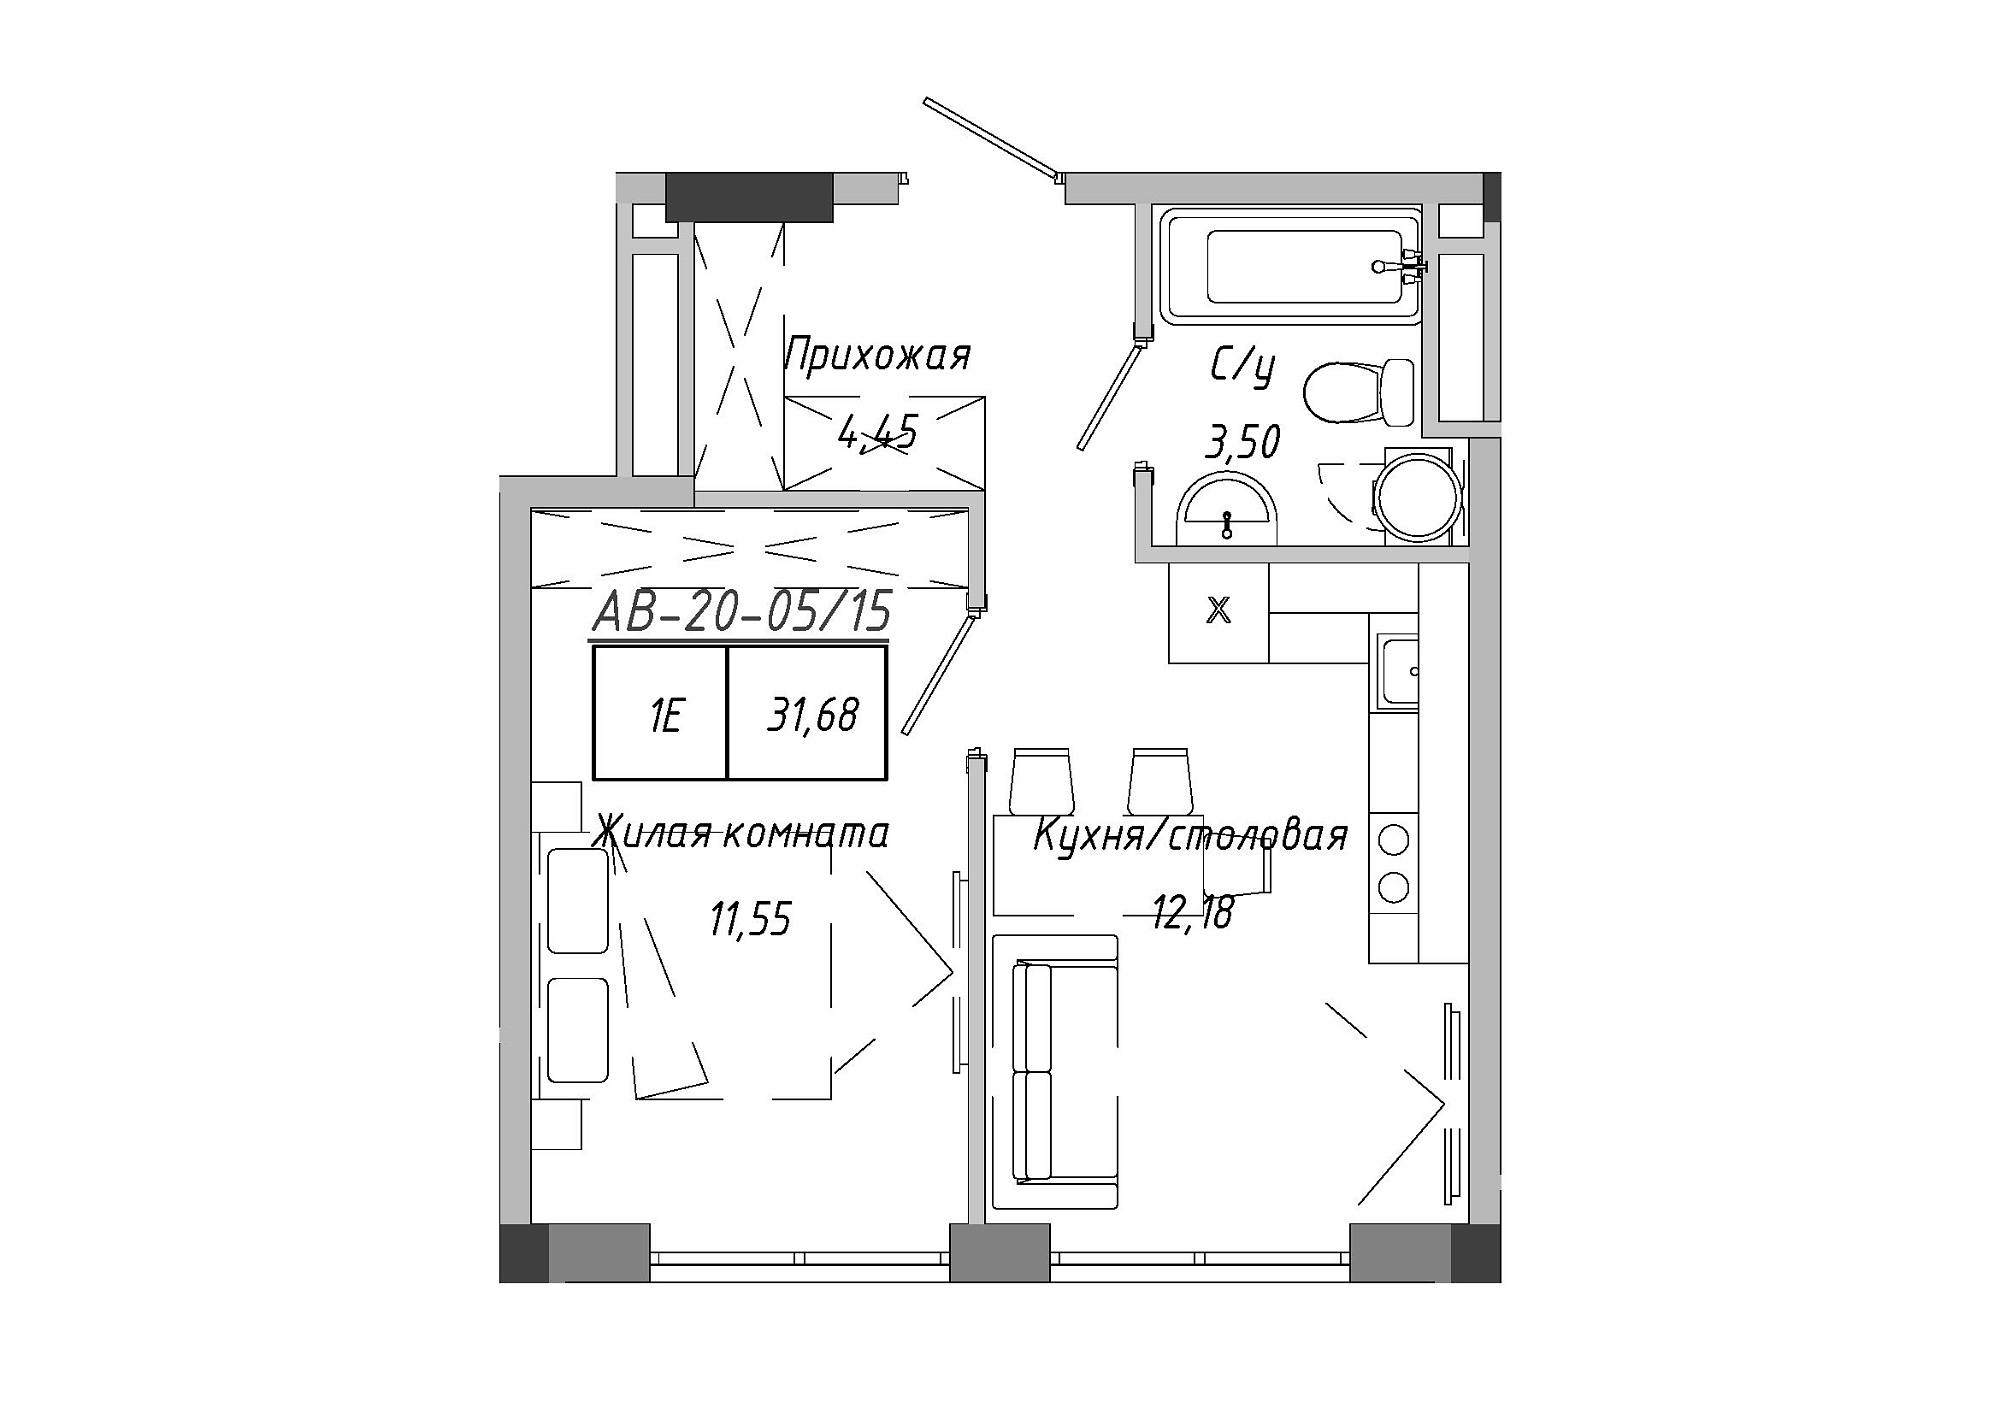 Планировка 1-к квартира площей 31.51м2, AB-20-05/00015.